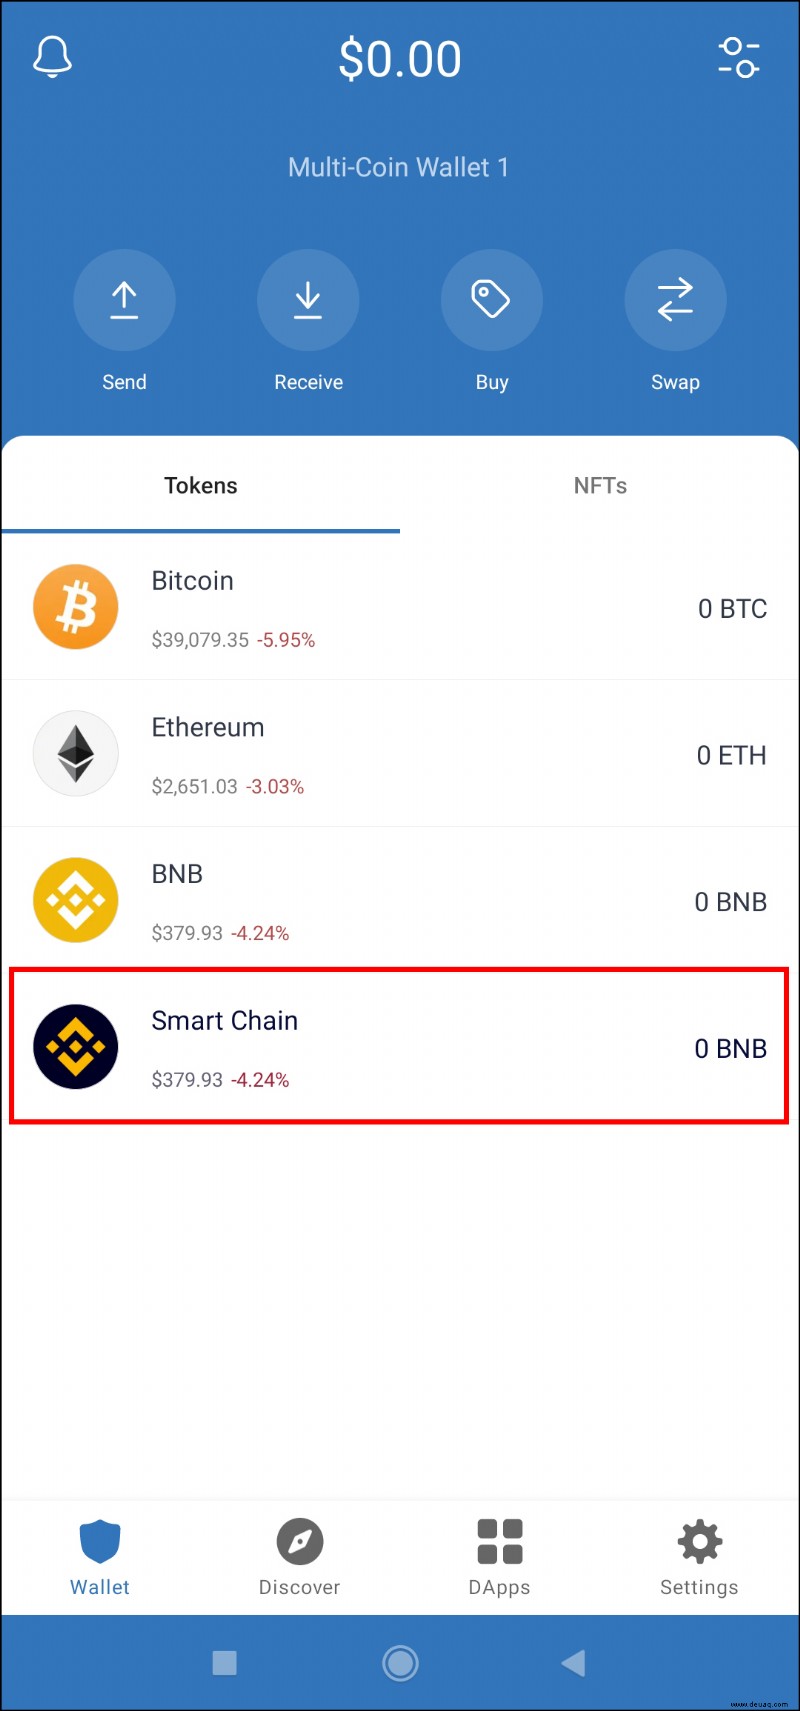 So wechseln Sie BNB zu Smart Chain in Trust Wallet